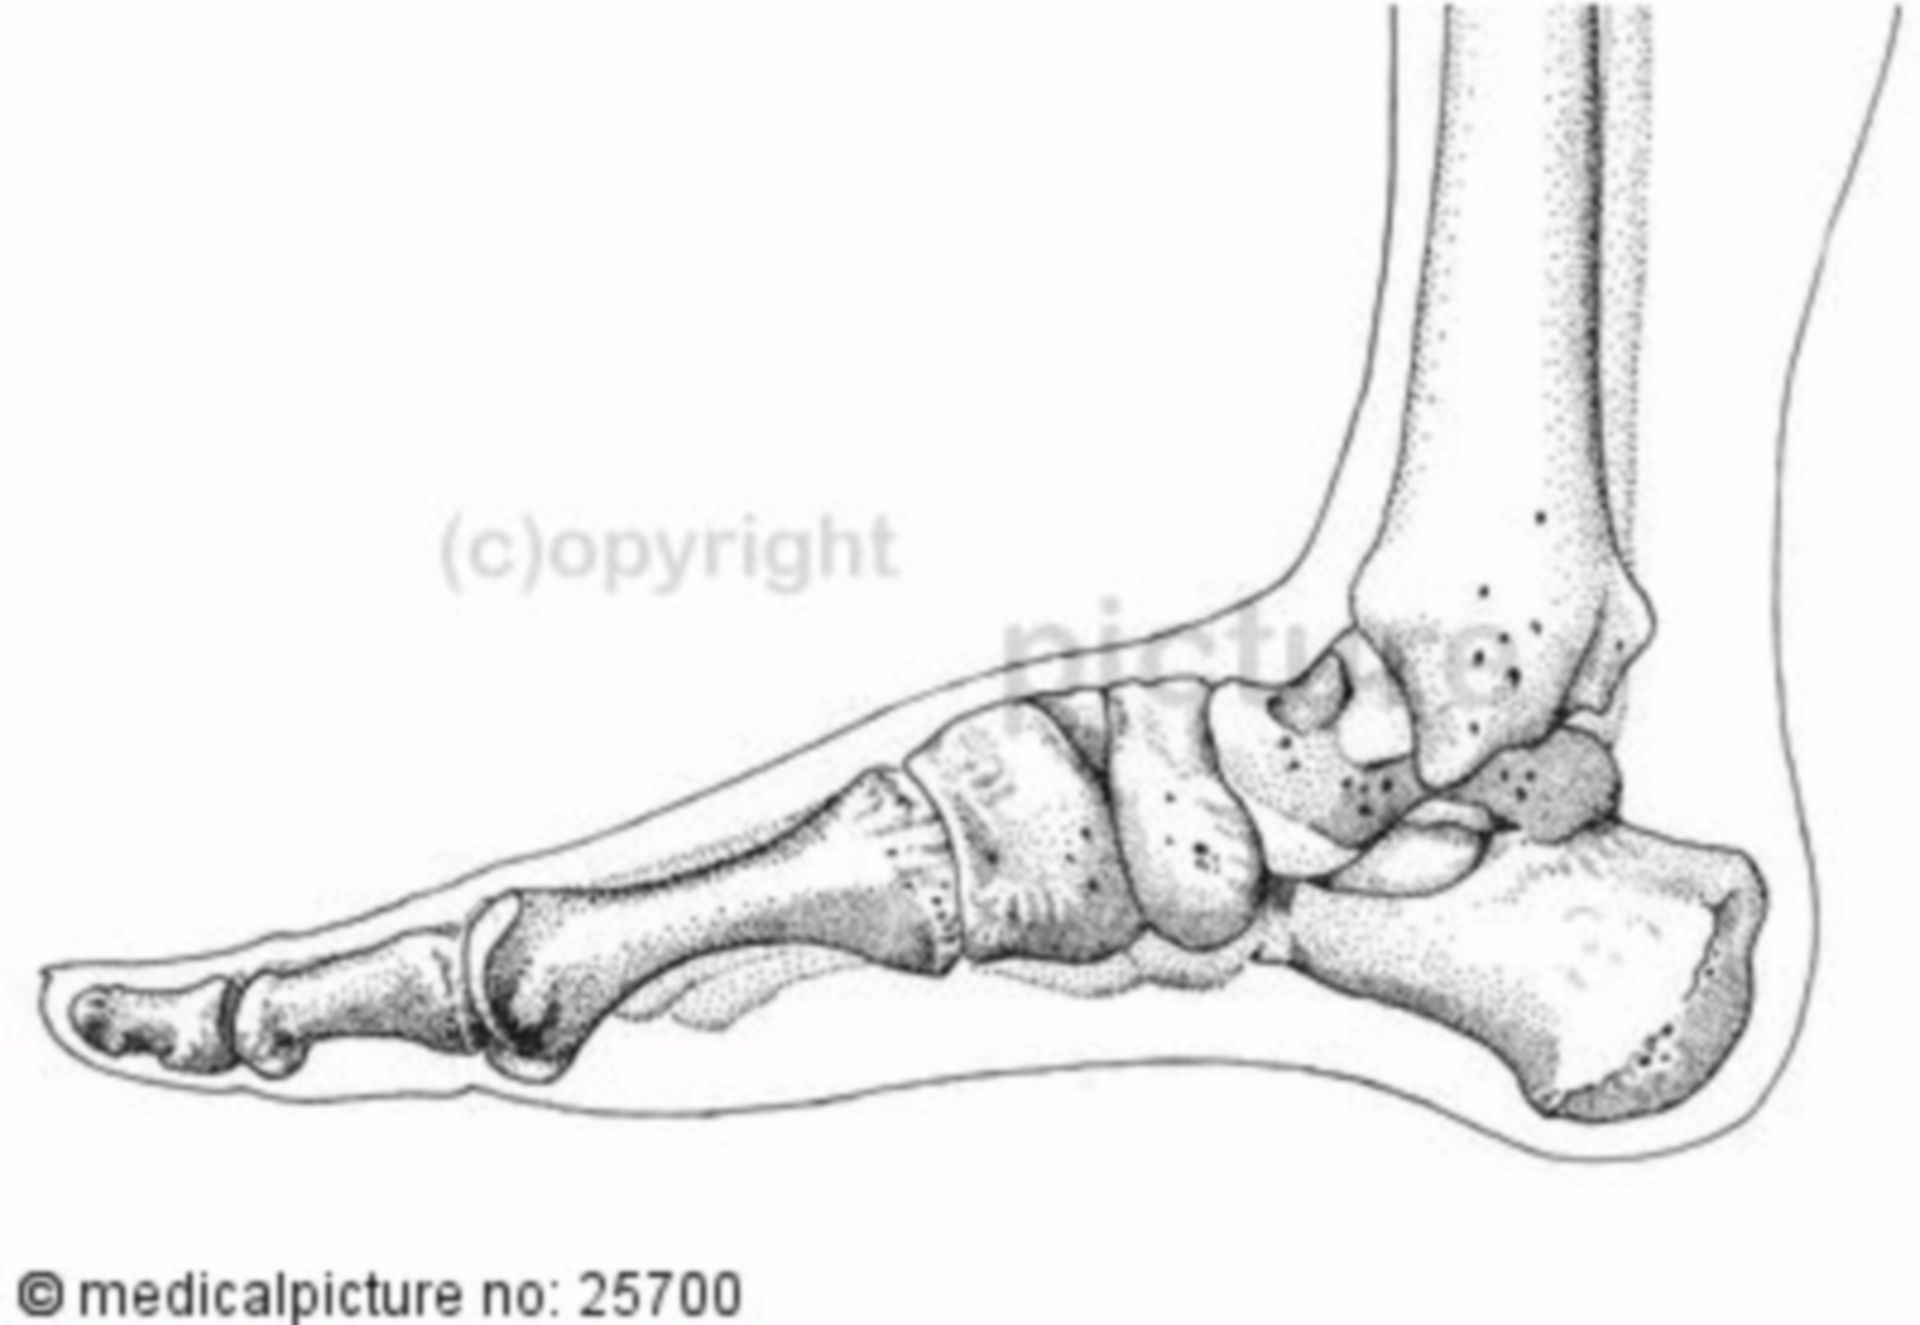 Human foot skeleton